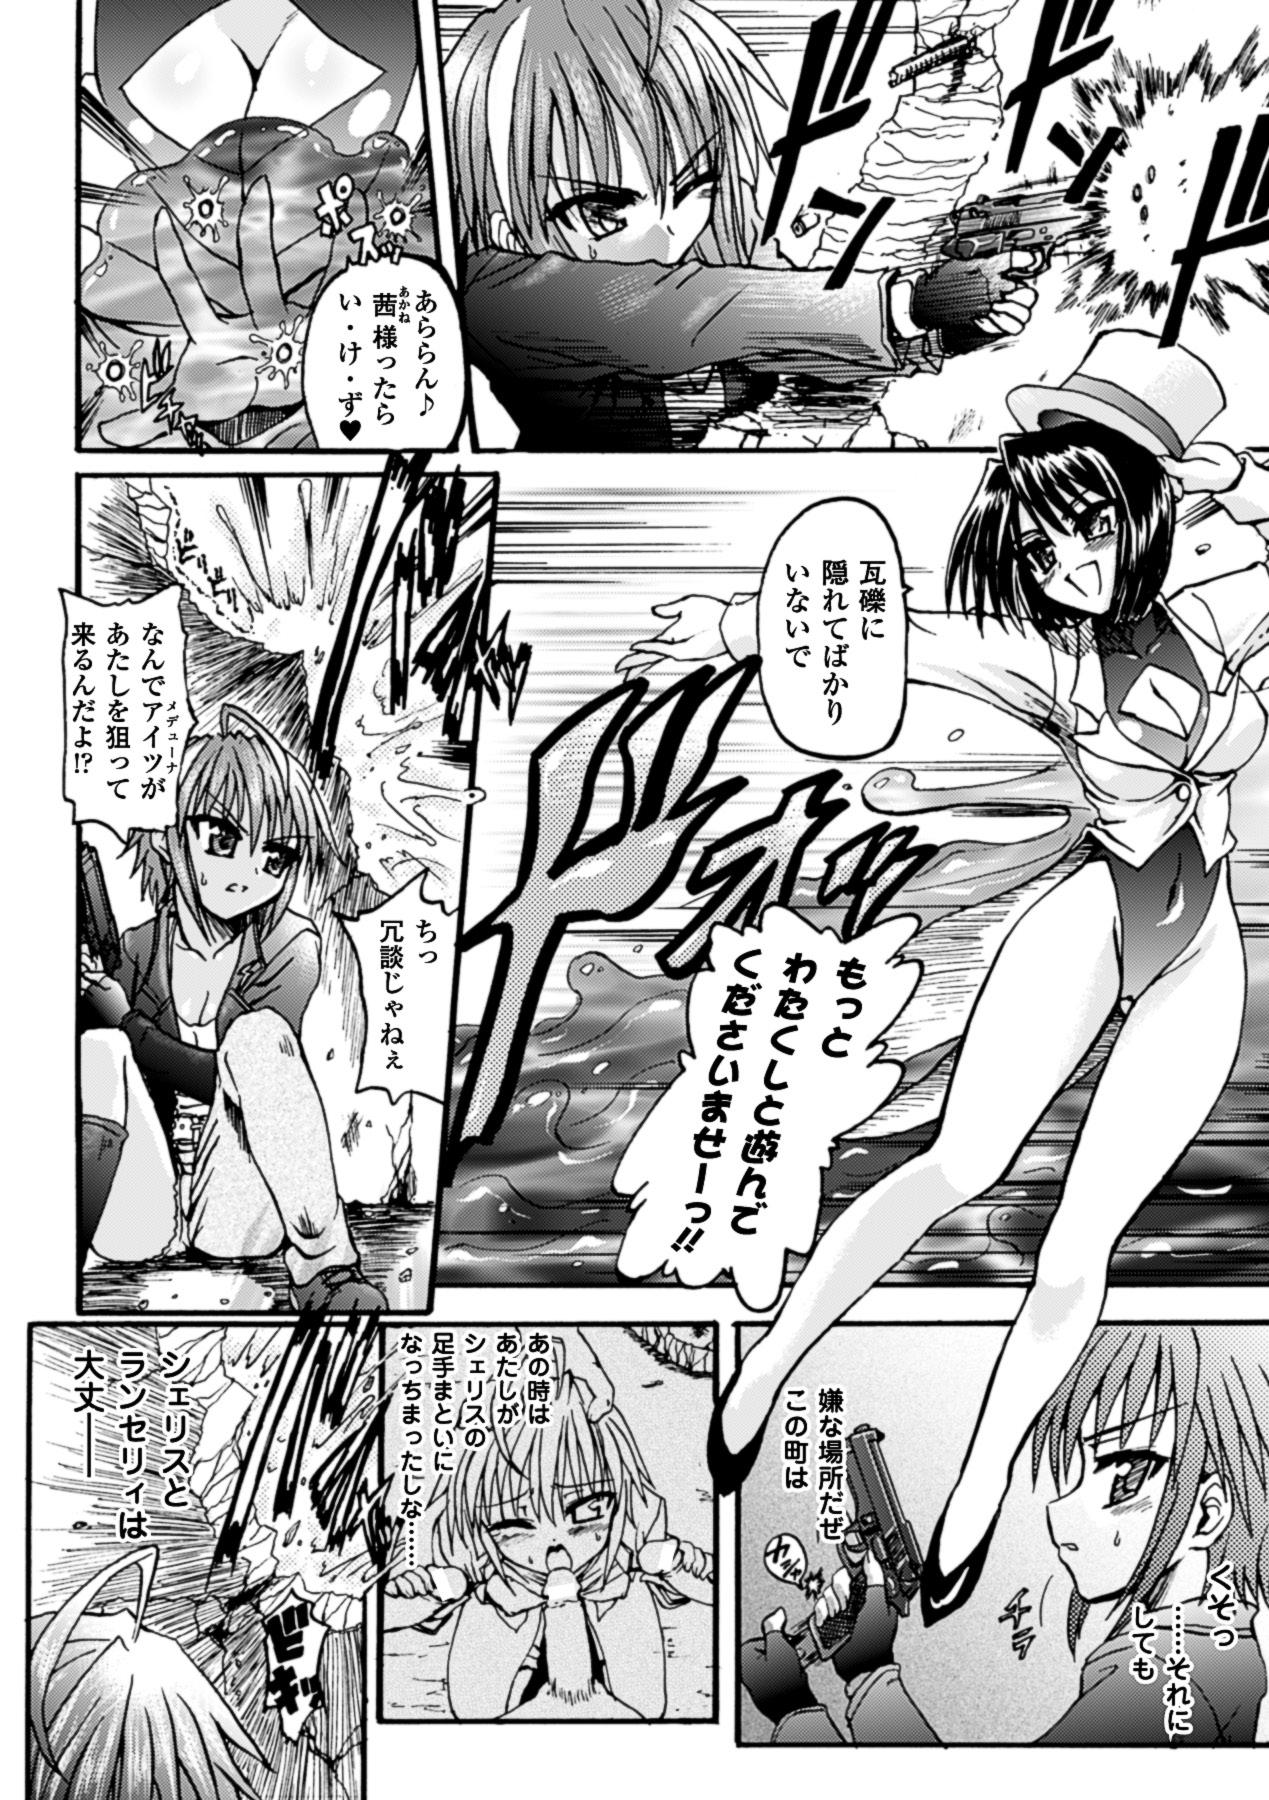 Novinhas Ma ga Ochiru Yoru Demonic Imitator - Ma ga ochiru yoru Gay Cut - Page 10